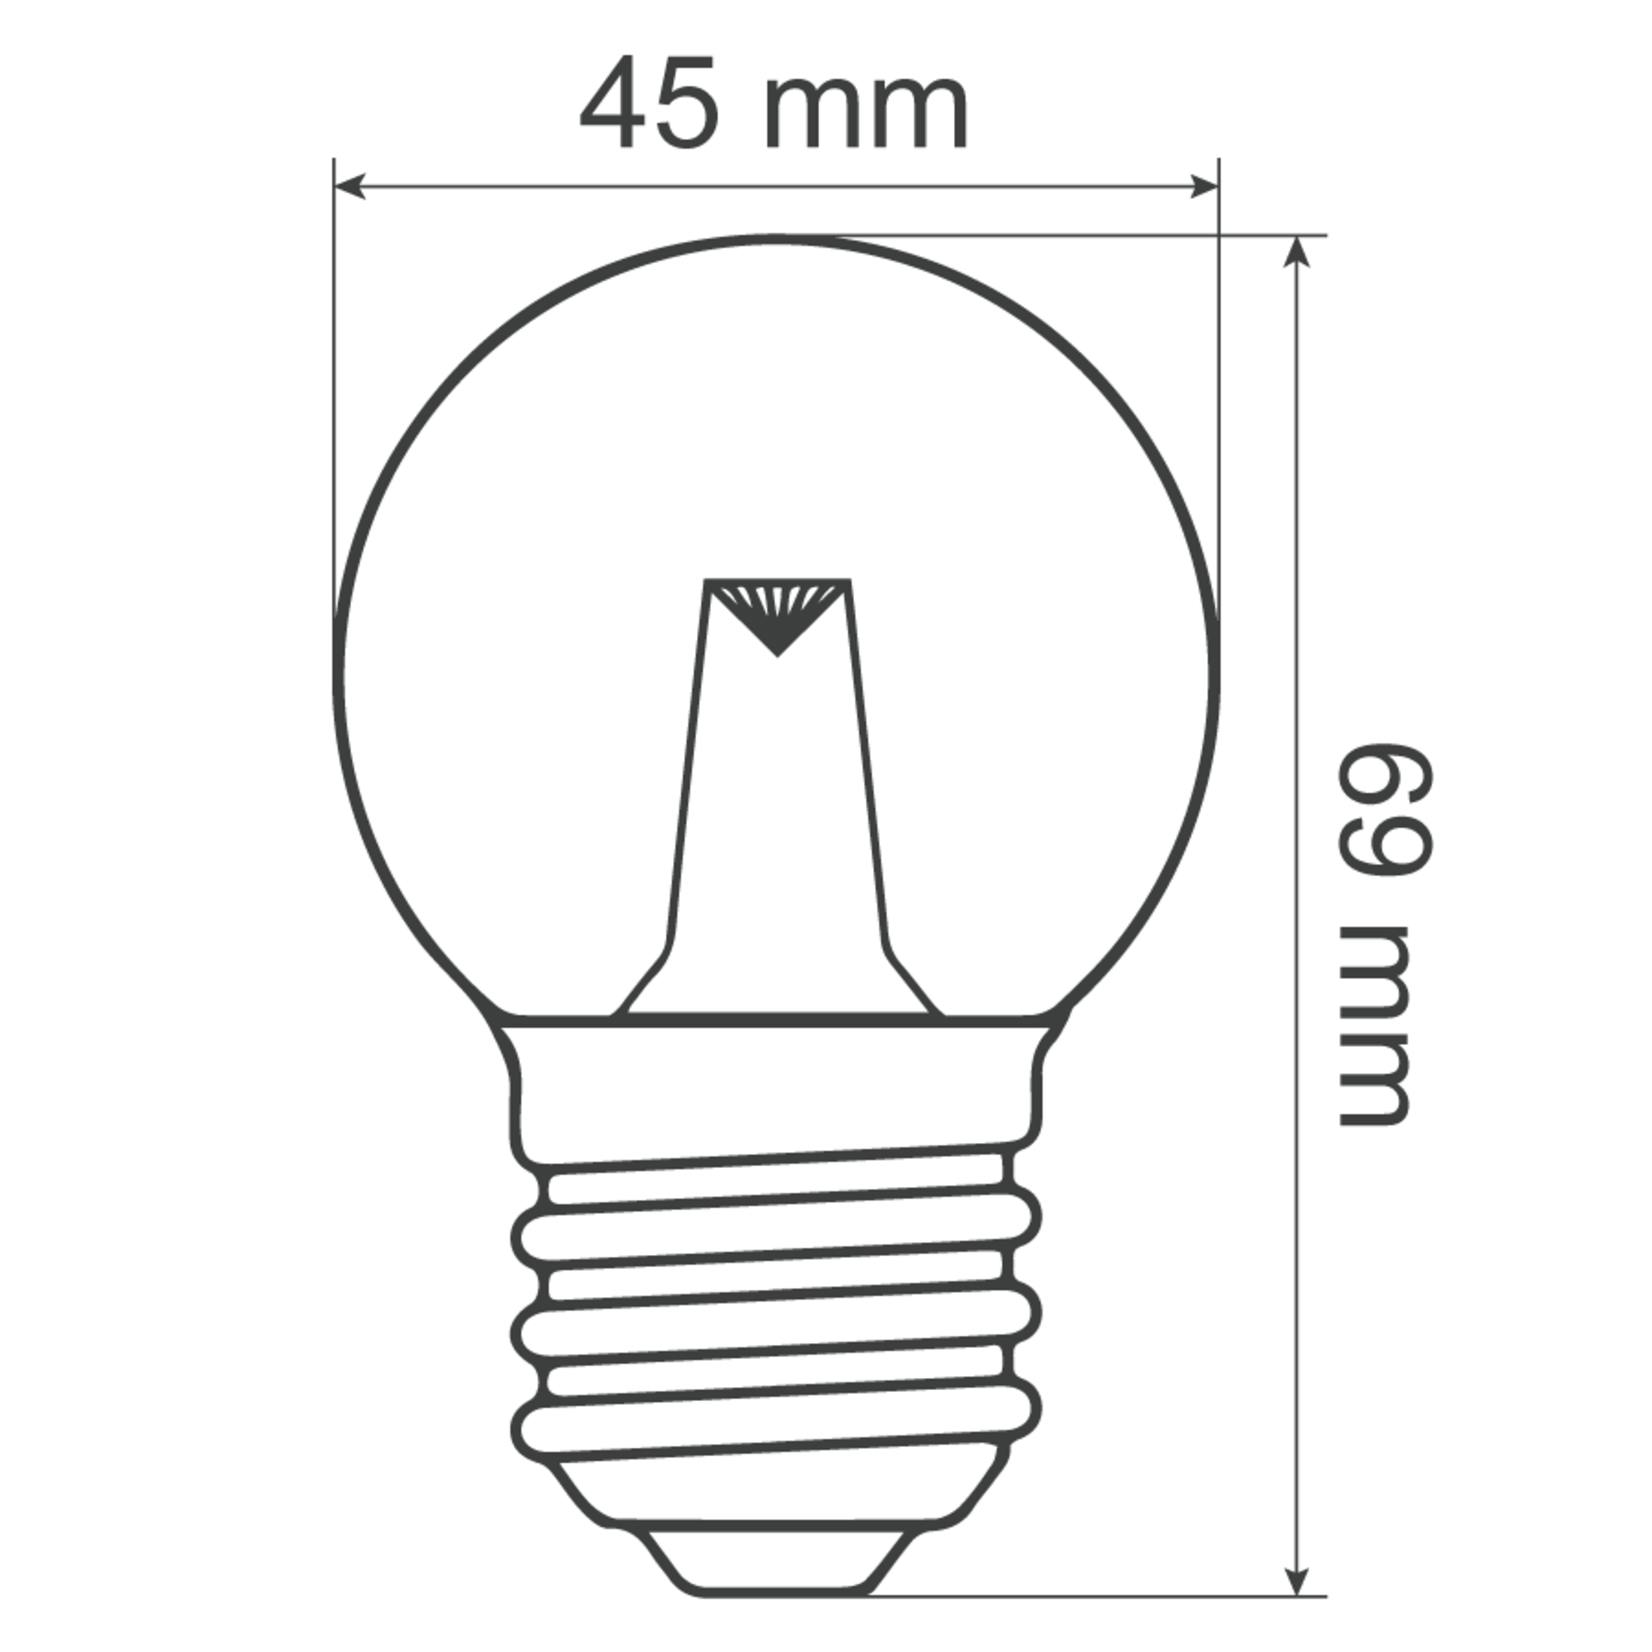 30-pack Dimbare E27 Warmwitte LED-lampen 2 watt - Energieklasse A+